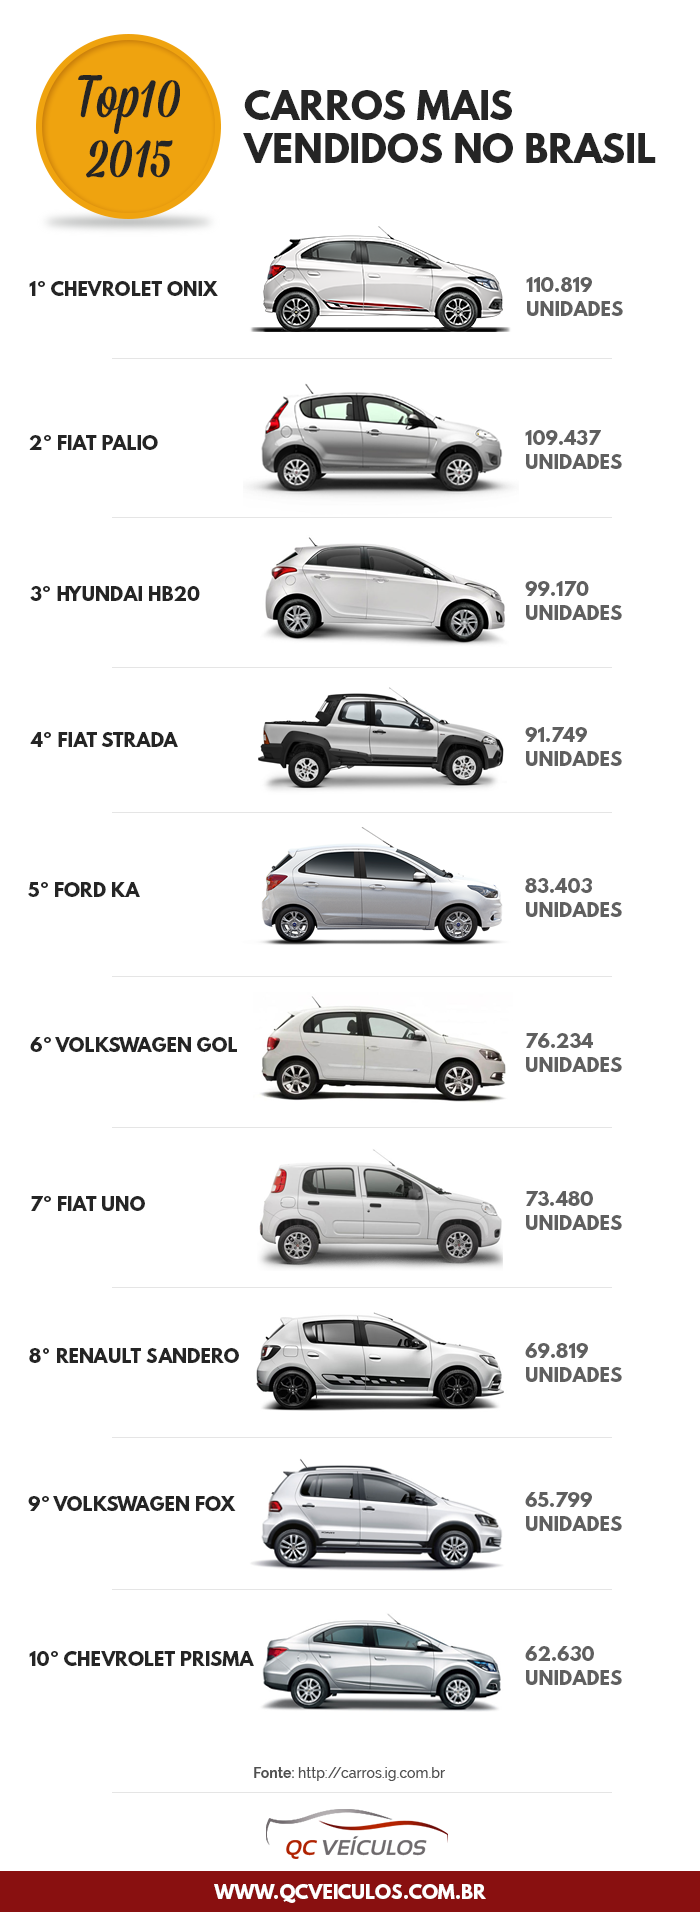 carros mais vendidos 2015 Brasil